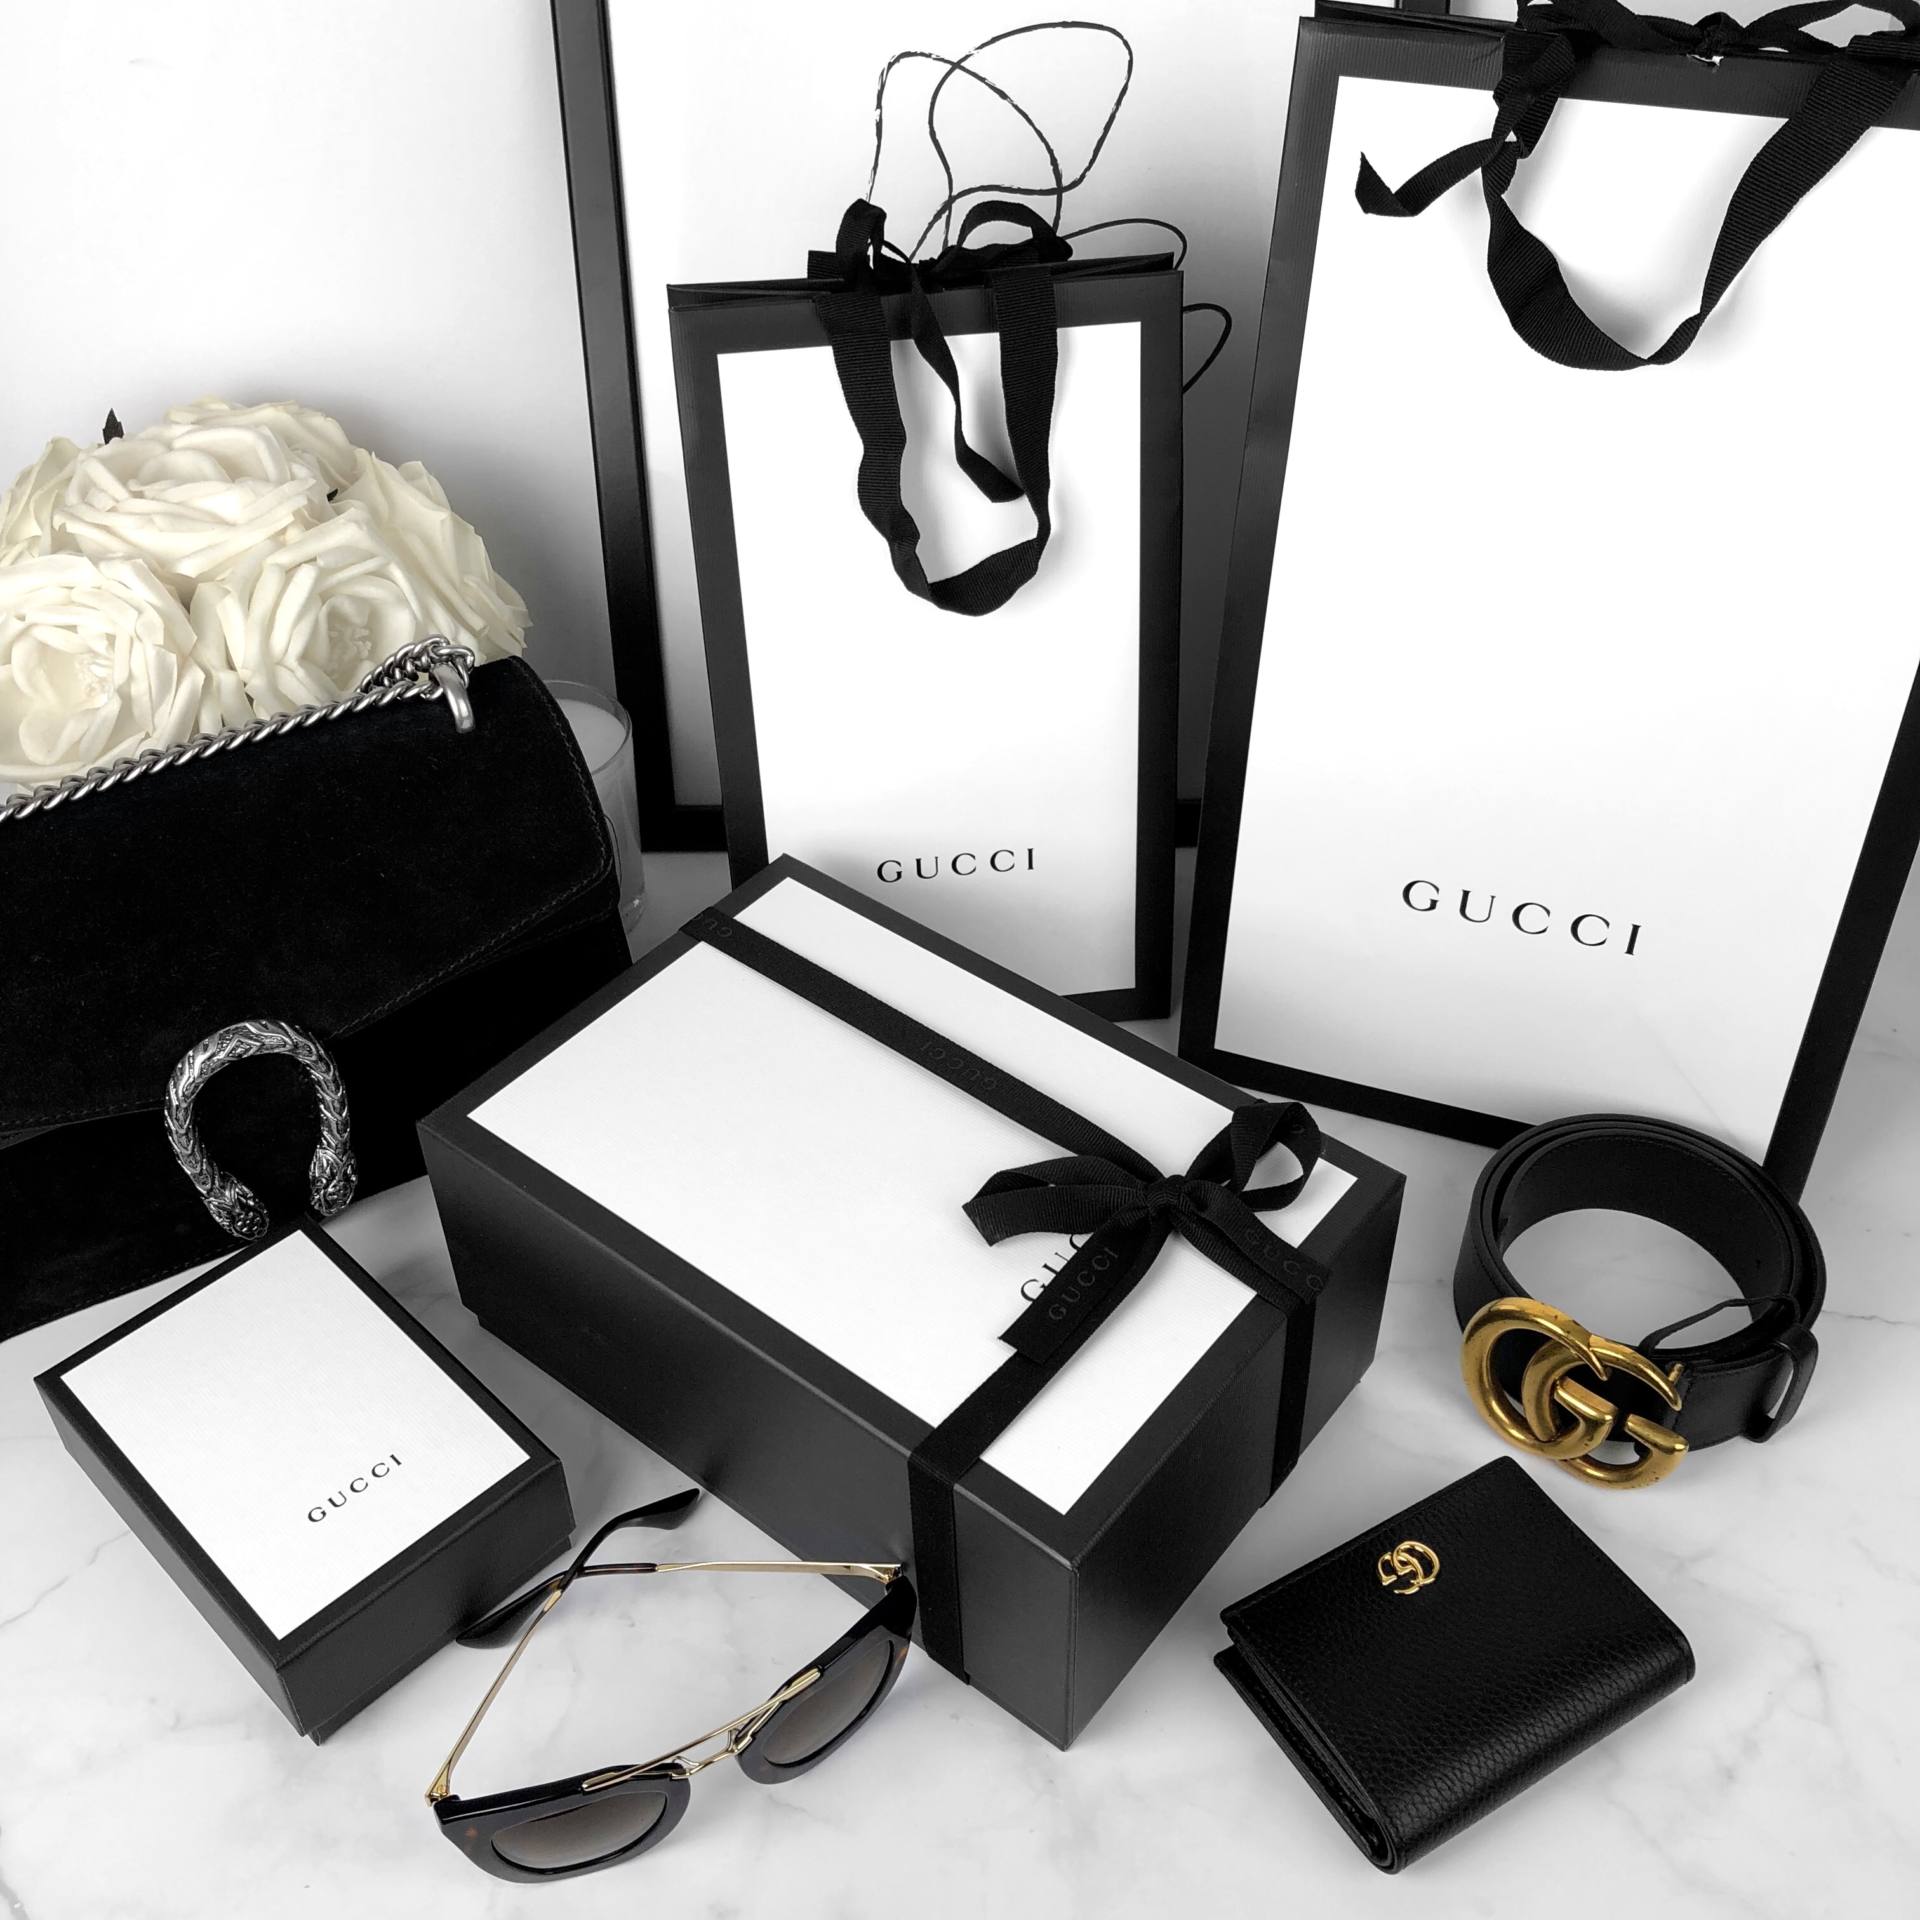 Gucci Dionysus small shoulder bag unboxing 